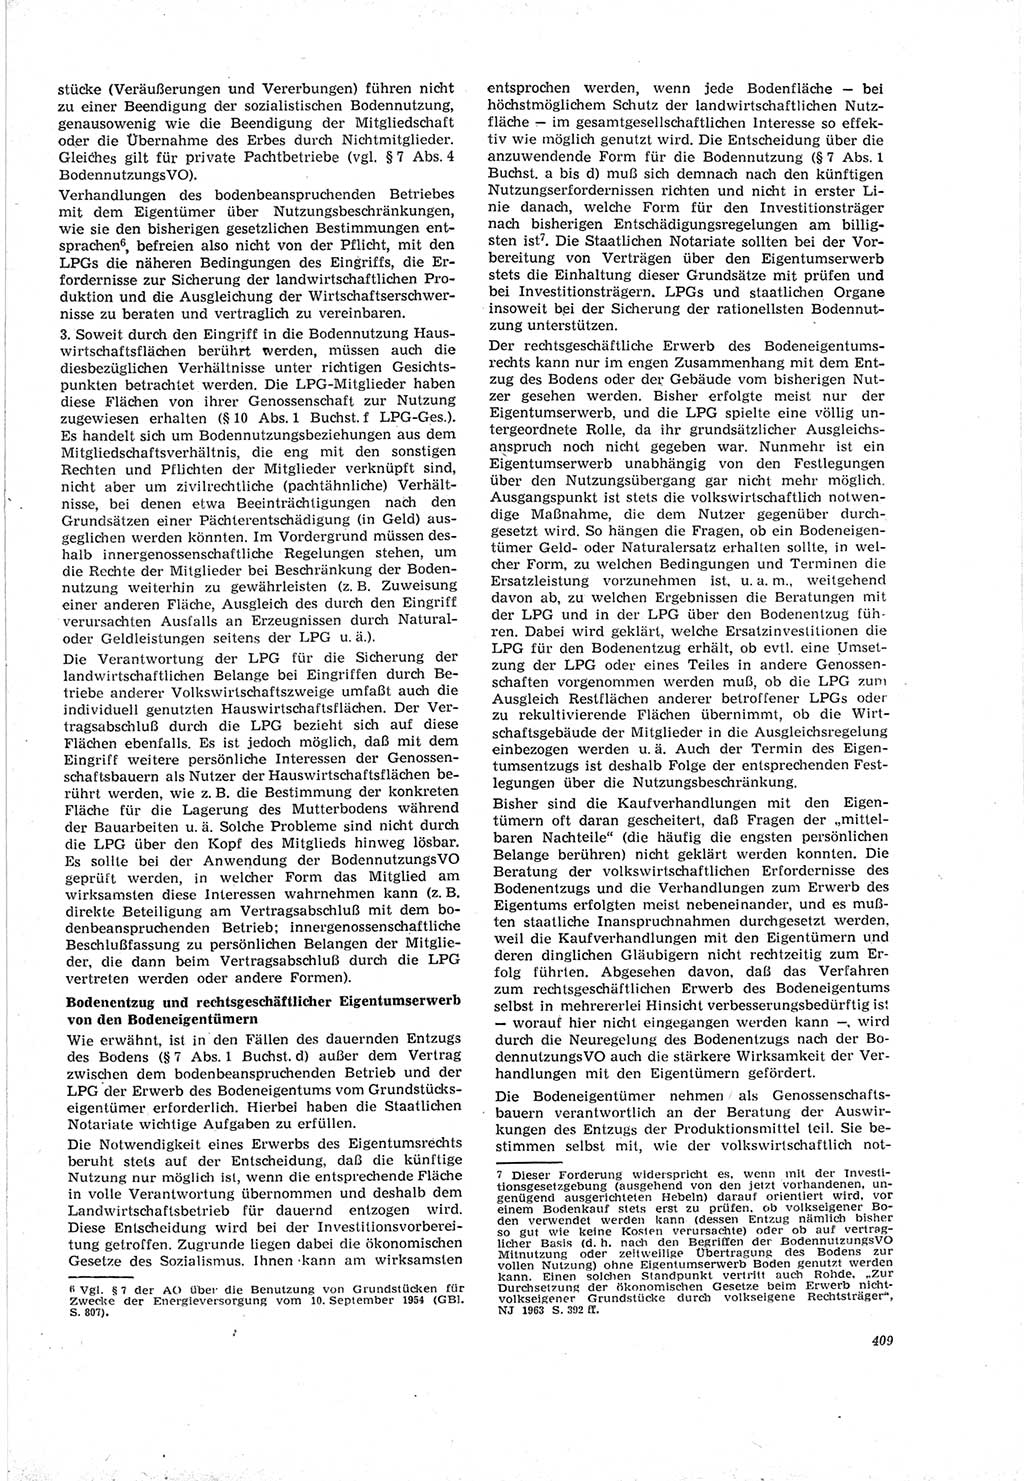 Neue Justiz (NJ), Zeitschrift für Recht und Rechtswissenschaft [Deutsche Demokratische Republik (DDR)], 19. Jahrgang 1965, Seite 409 (NJ DDR 1965, S. 409)